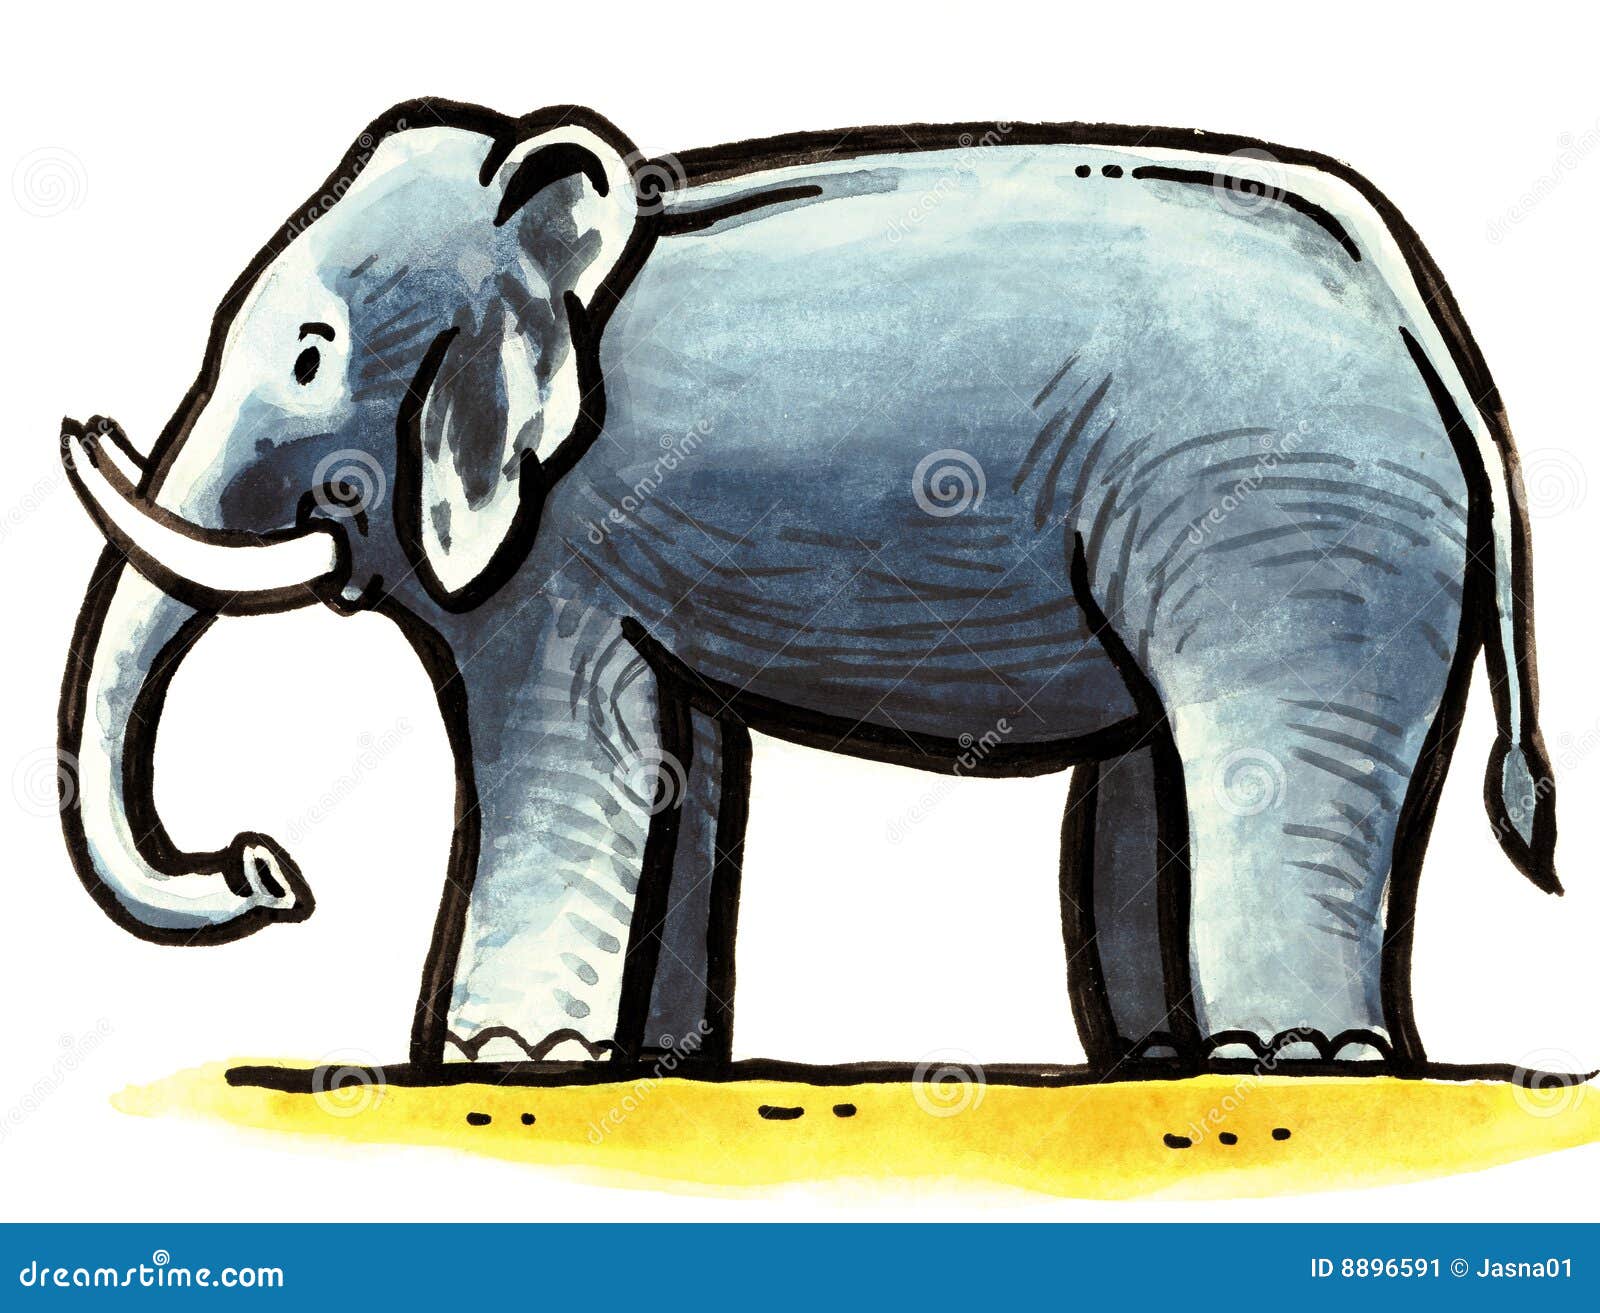 Серенький похож на слона. Маленький серенький на слона похож. Слон хвост вверх иллюстрации. Маленький серенький на слона похож кто это.